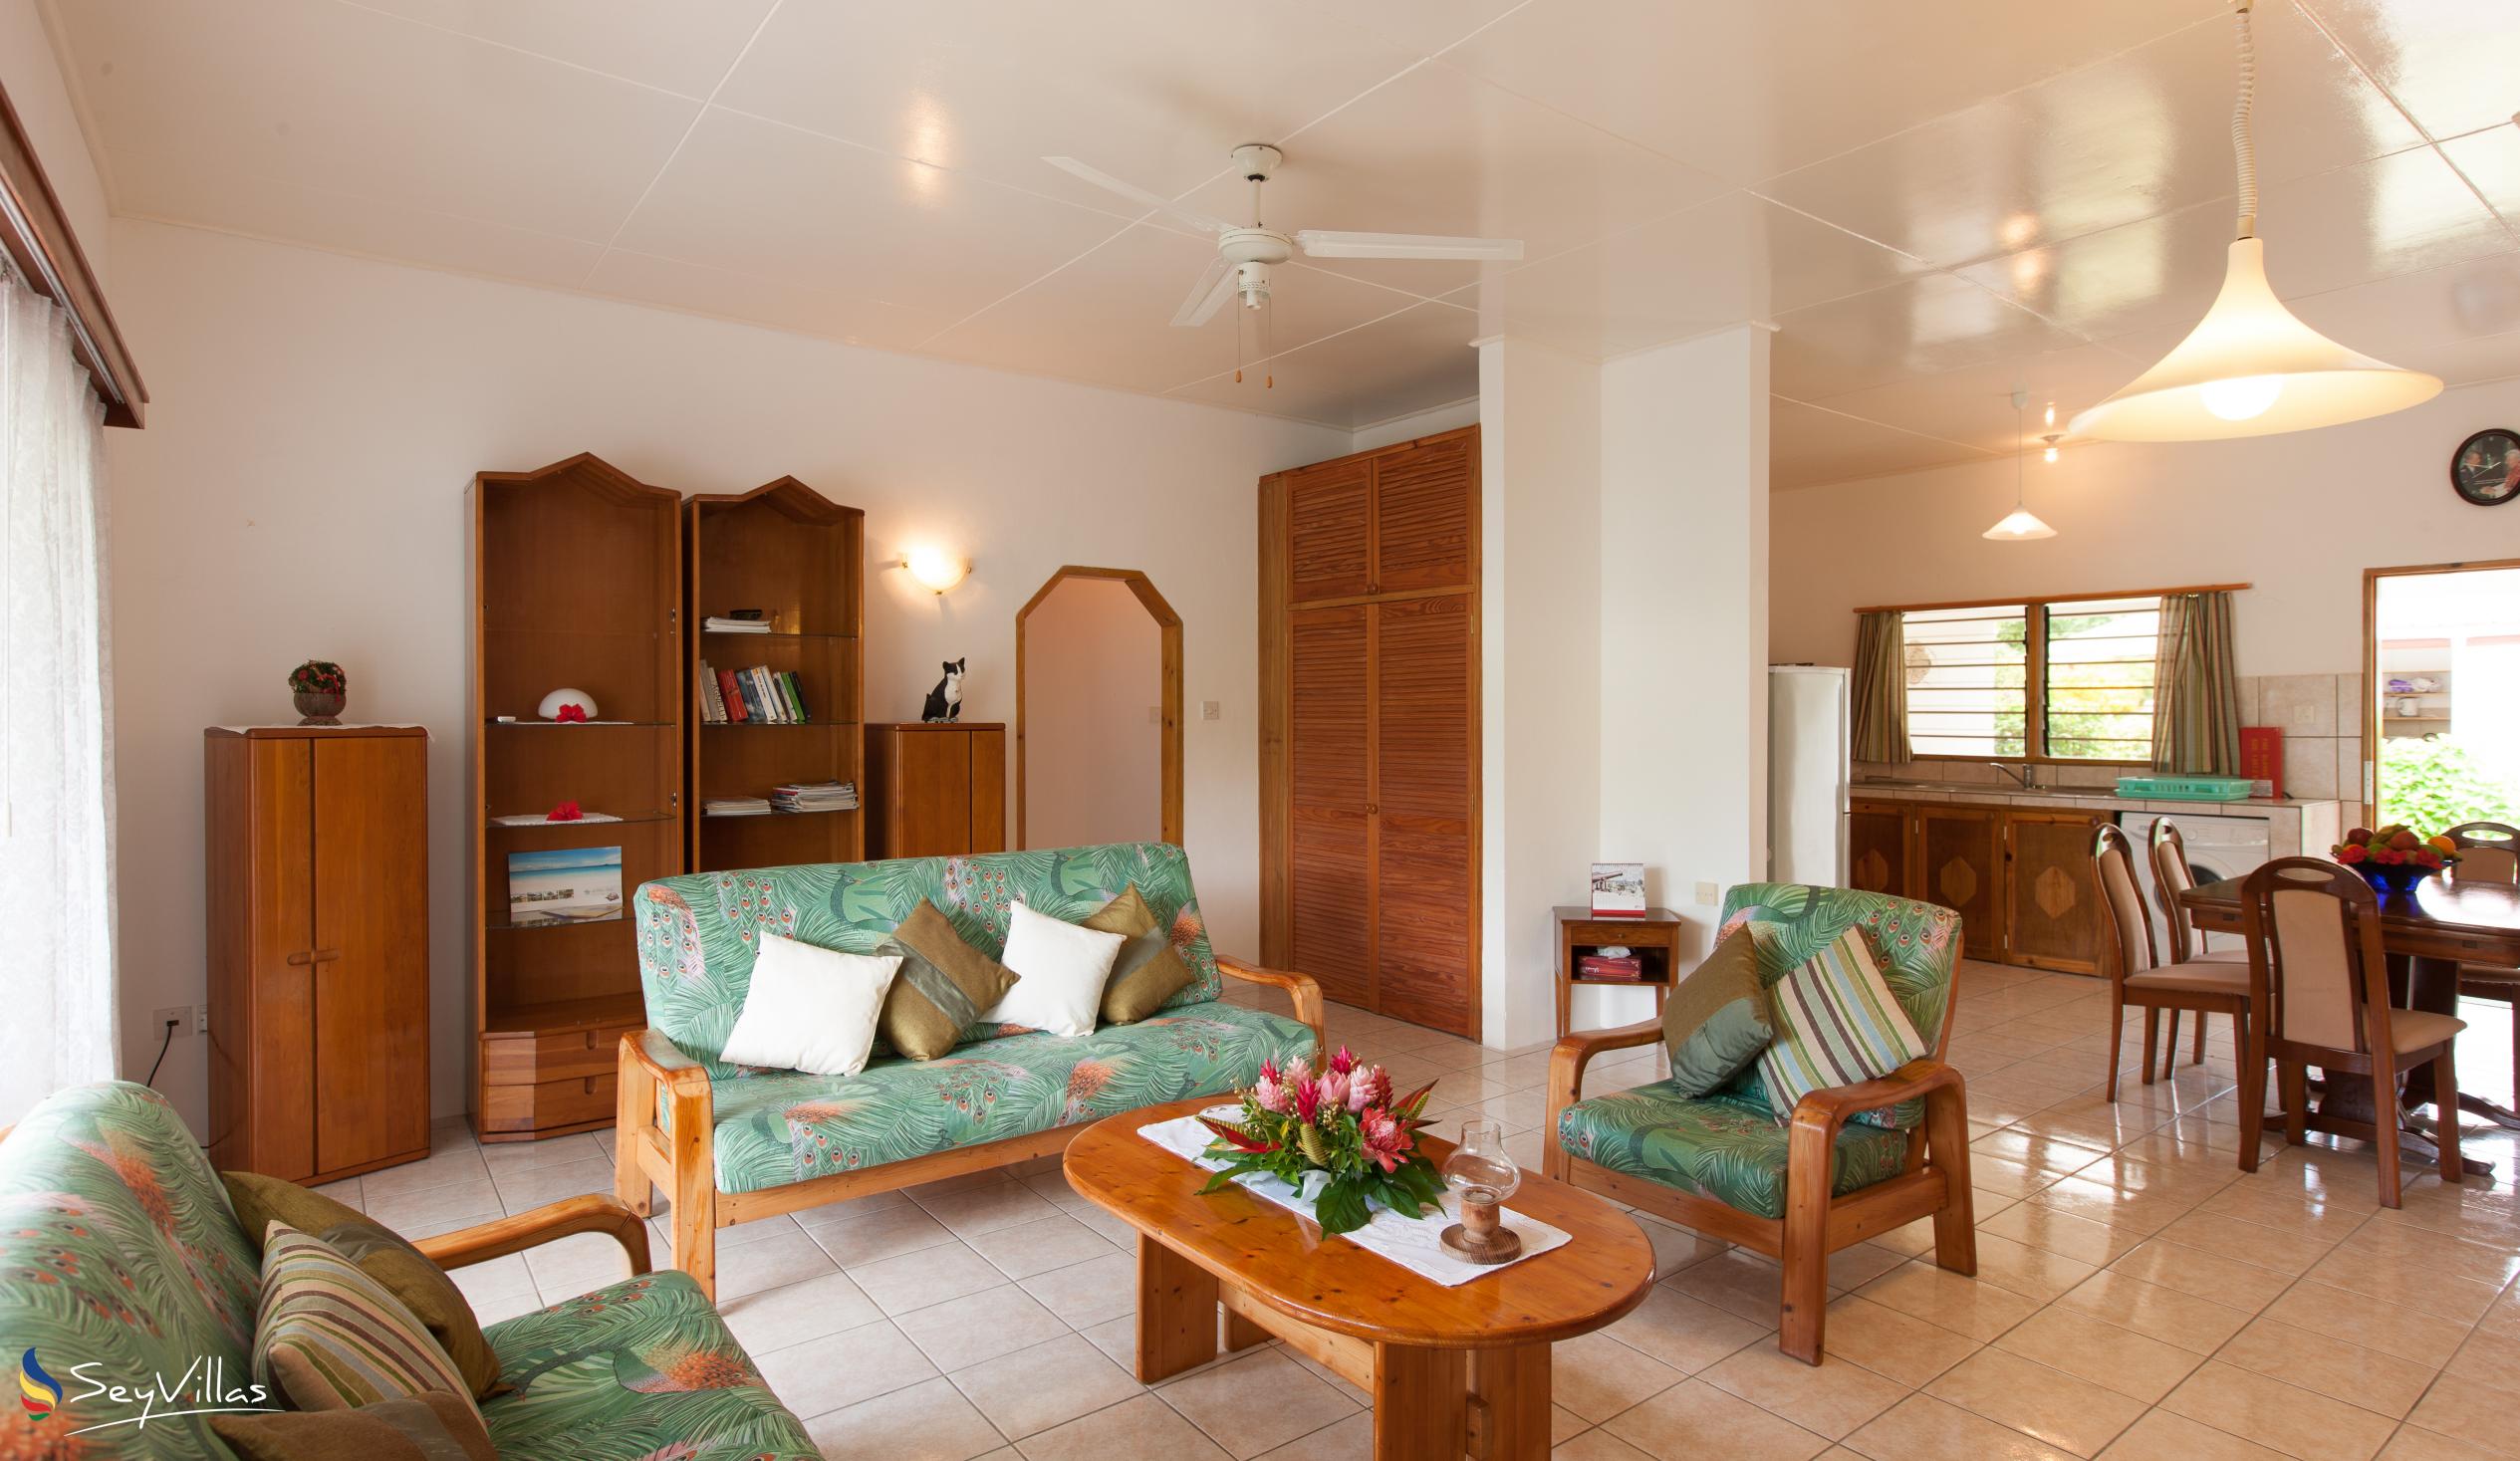 Foto 43: Le Relax St. Joseph Guest House - Chambre Familiale - Praslin (Seychelles)